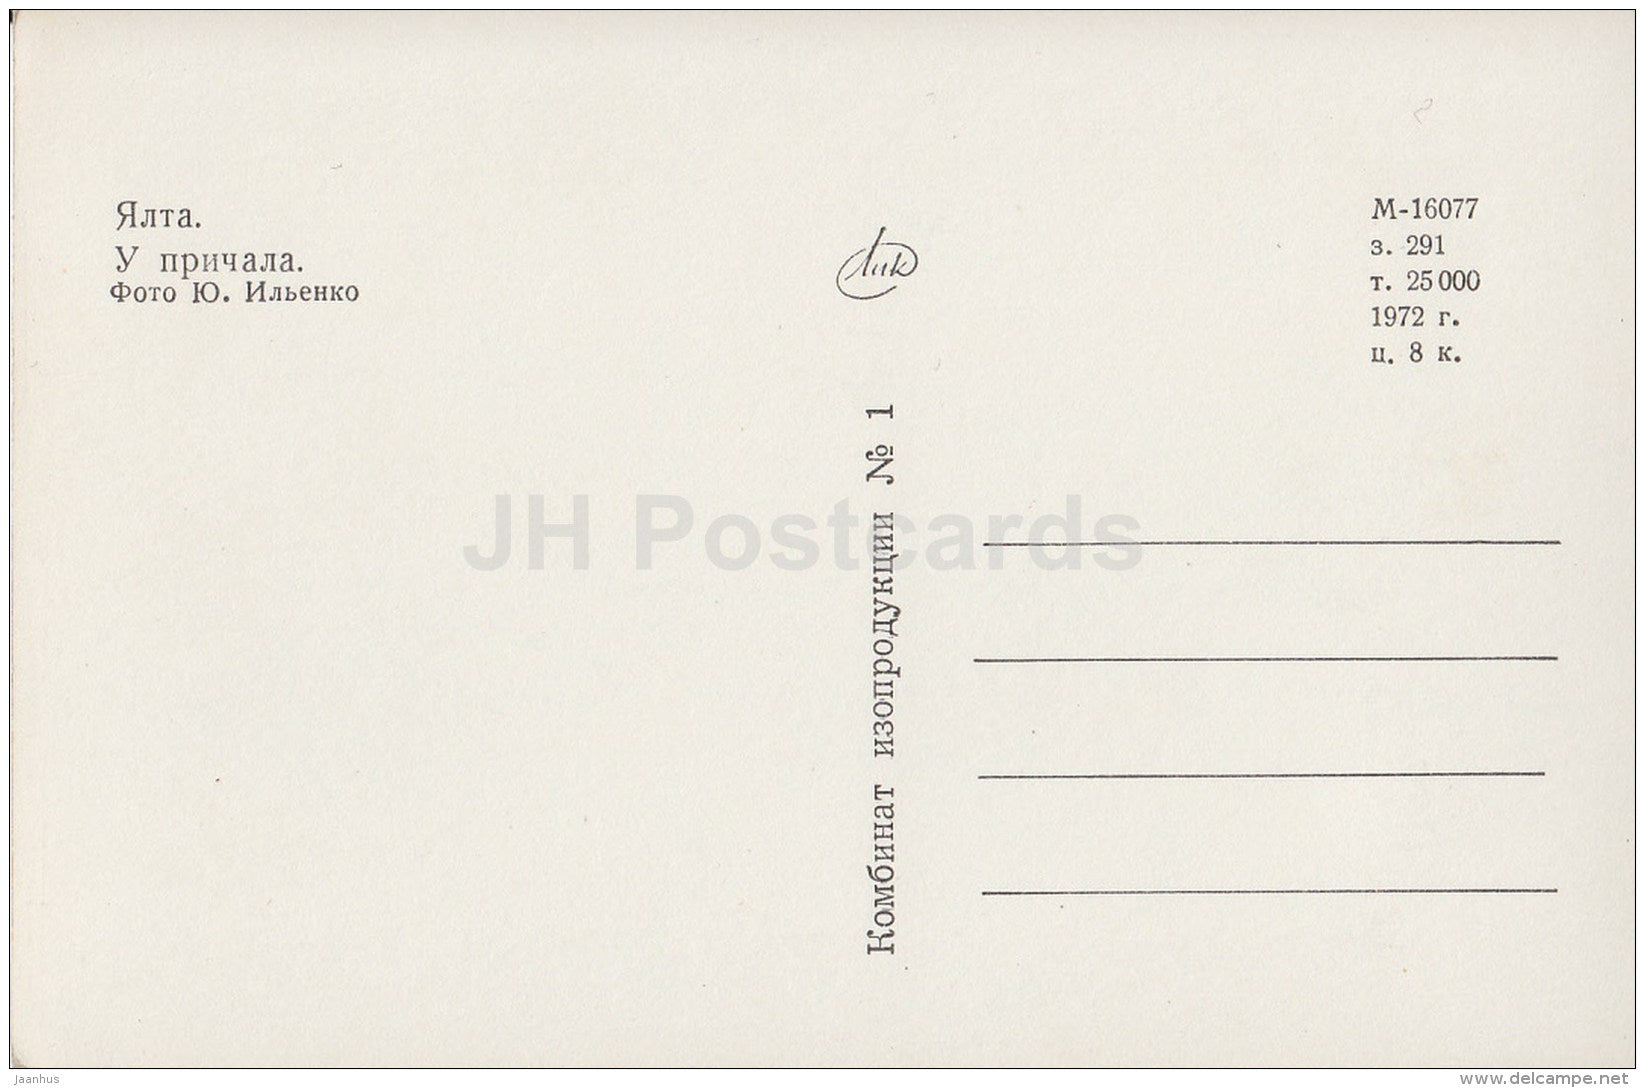 Berth - ship - Black sea - Yalta - 1972 - Ukraine USSR - unused - JH Postcards